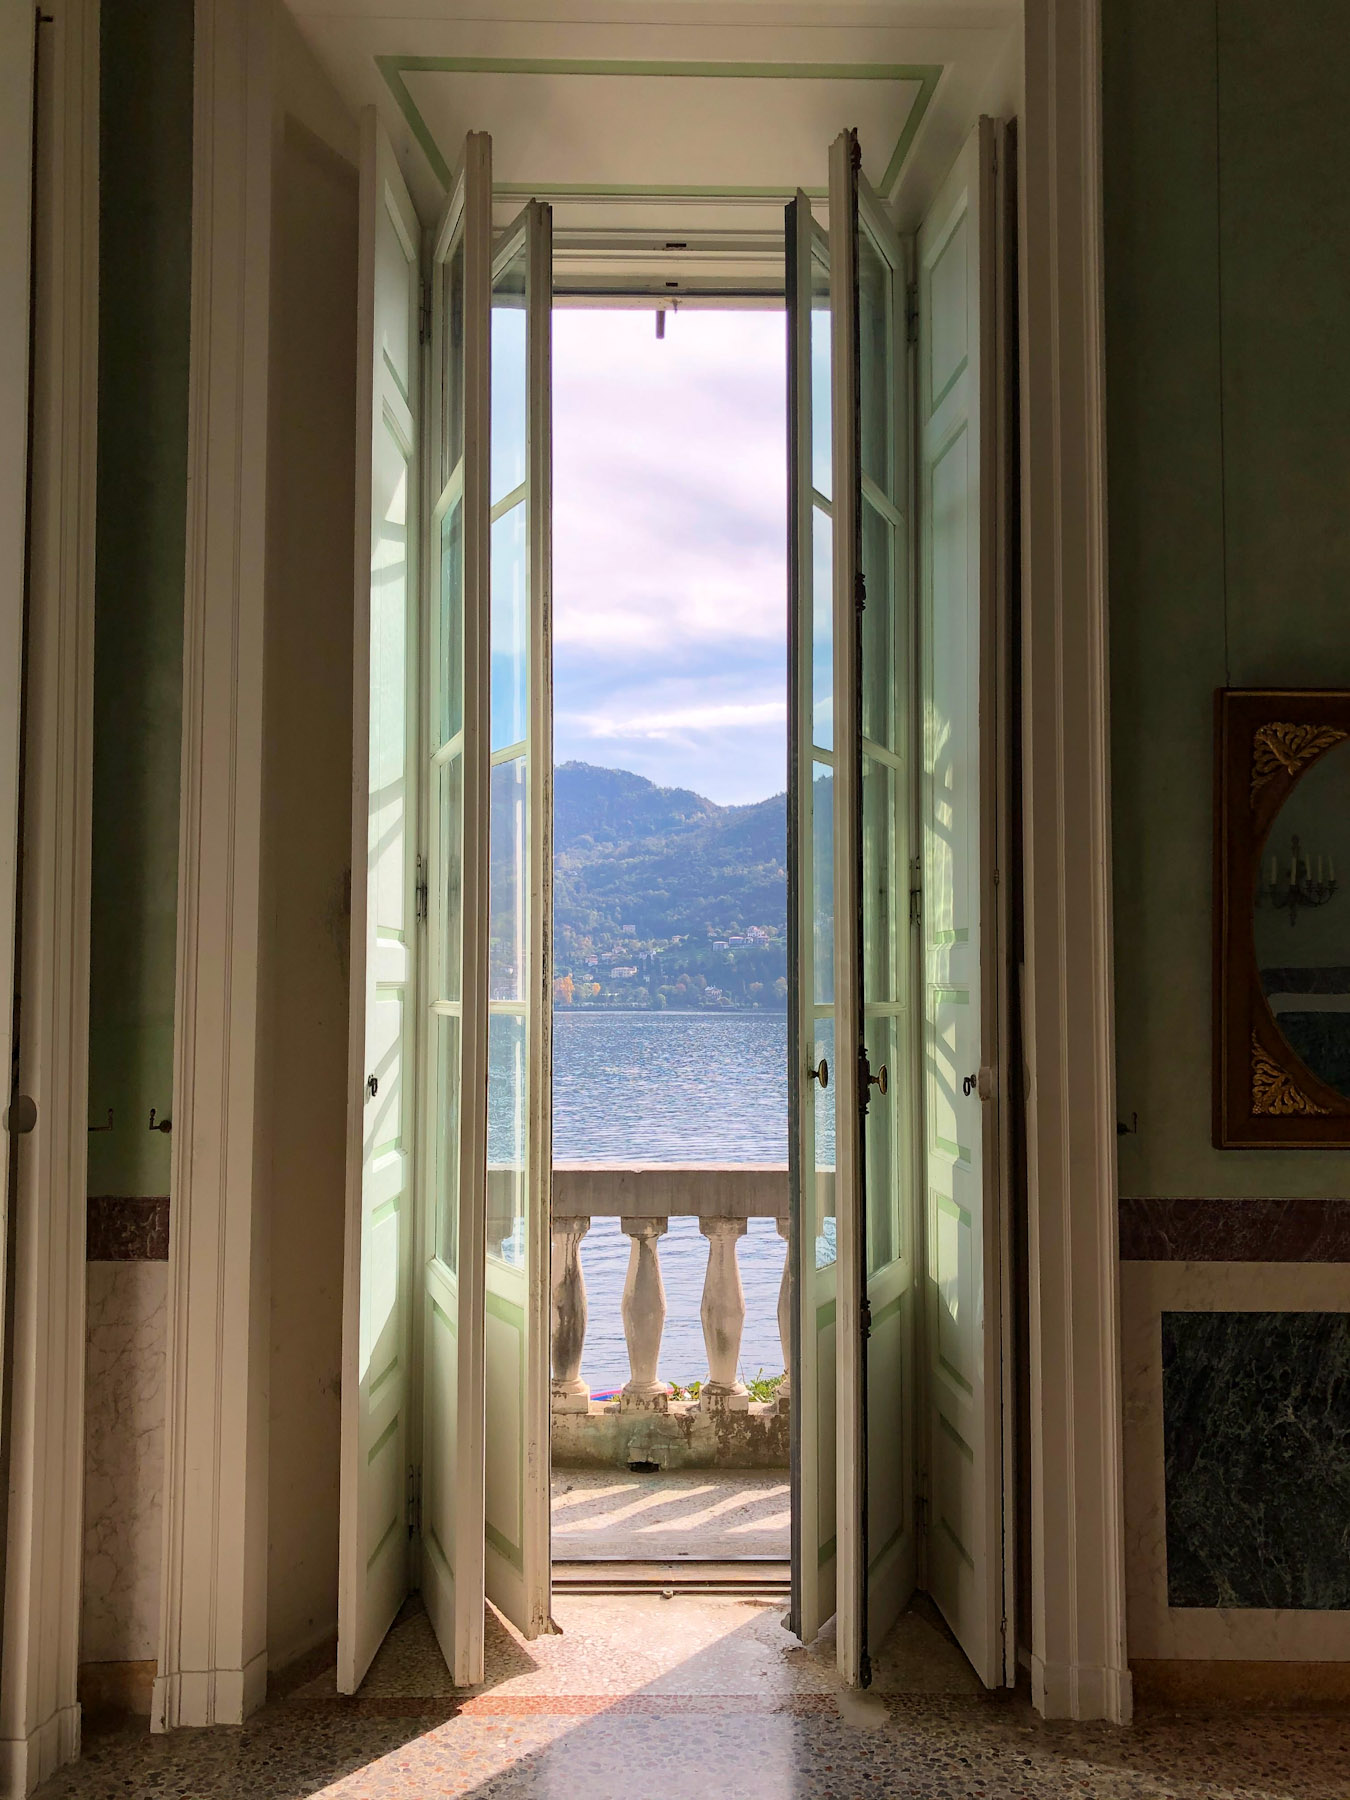 View of the Lake from a Balcony, Villa Carlotta, Tremezzina, Italy